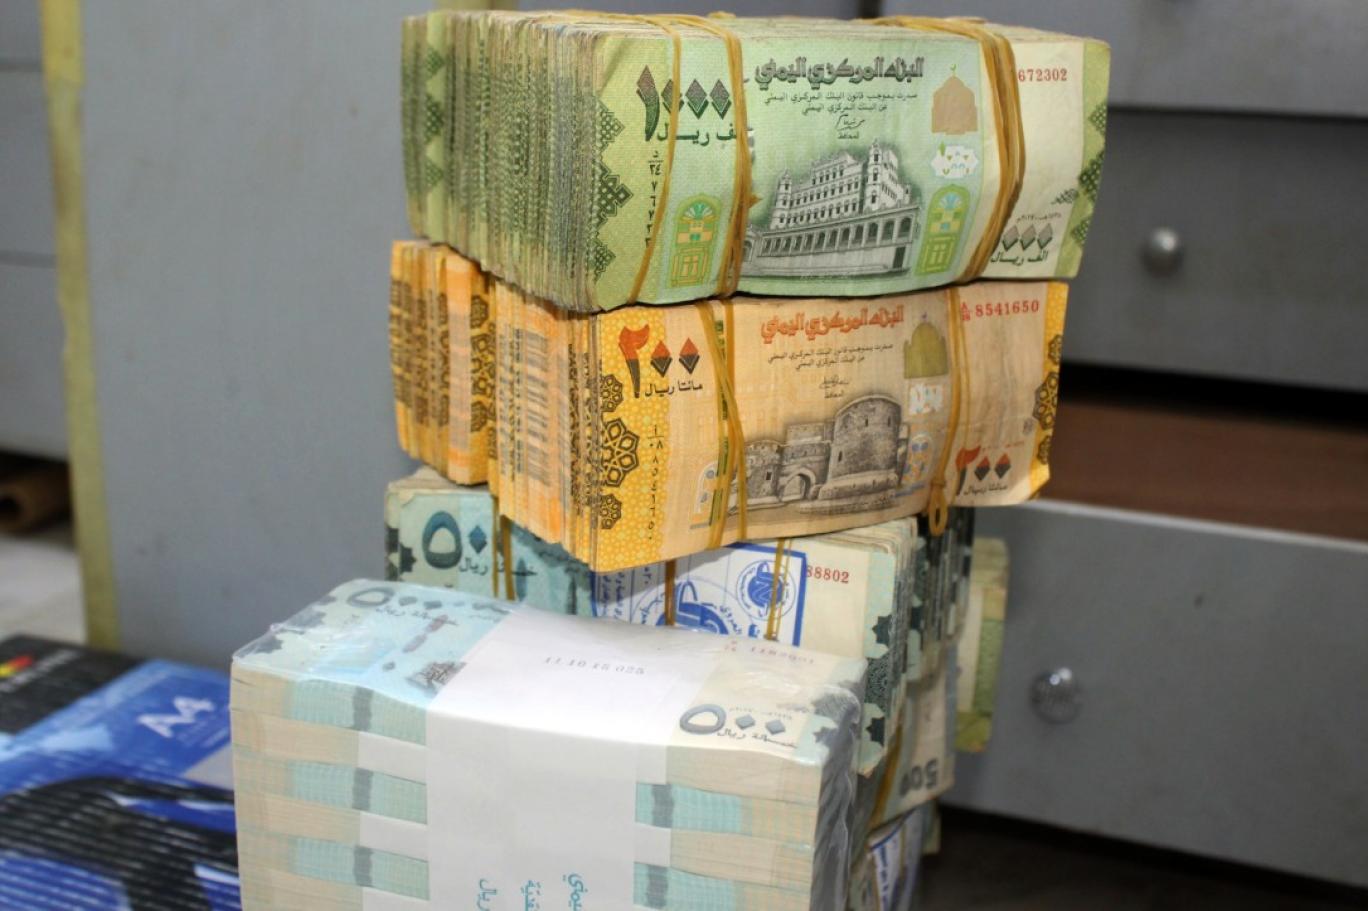 شاهد: الدولار يبلغ 900.. وهذه هي تحديثات أسعار الصرف في صنعاء وعدن ليومنا هذا الخميس